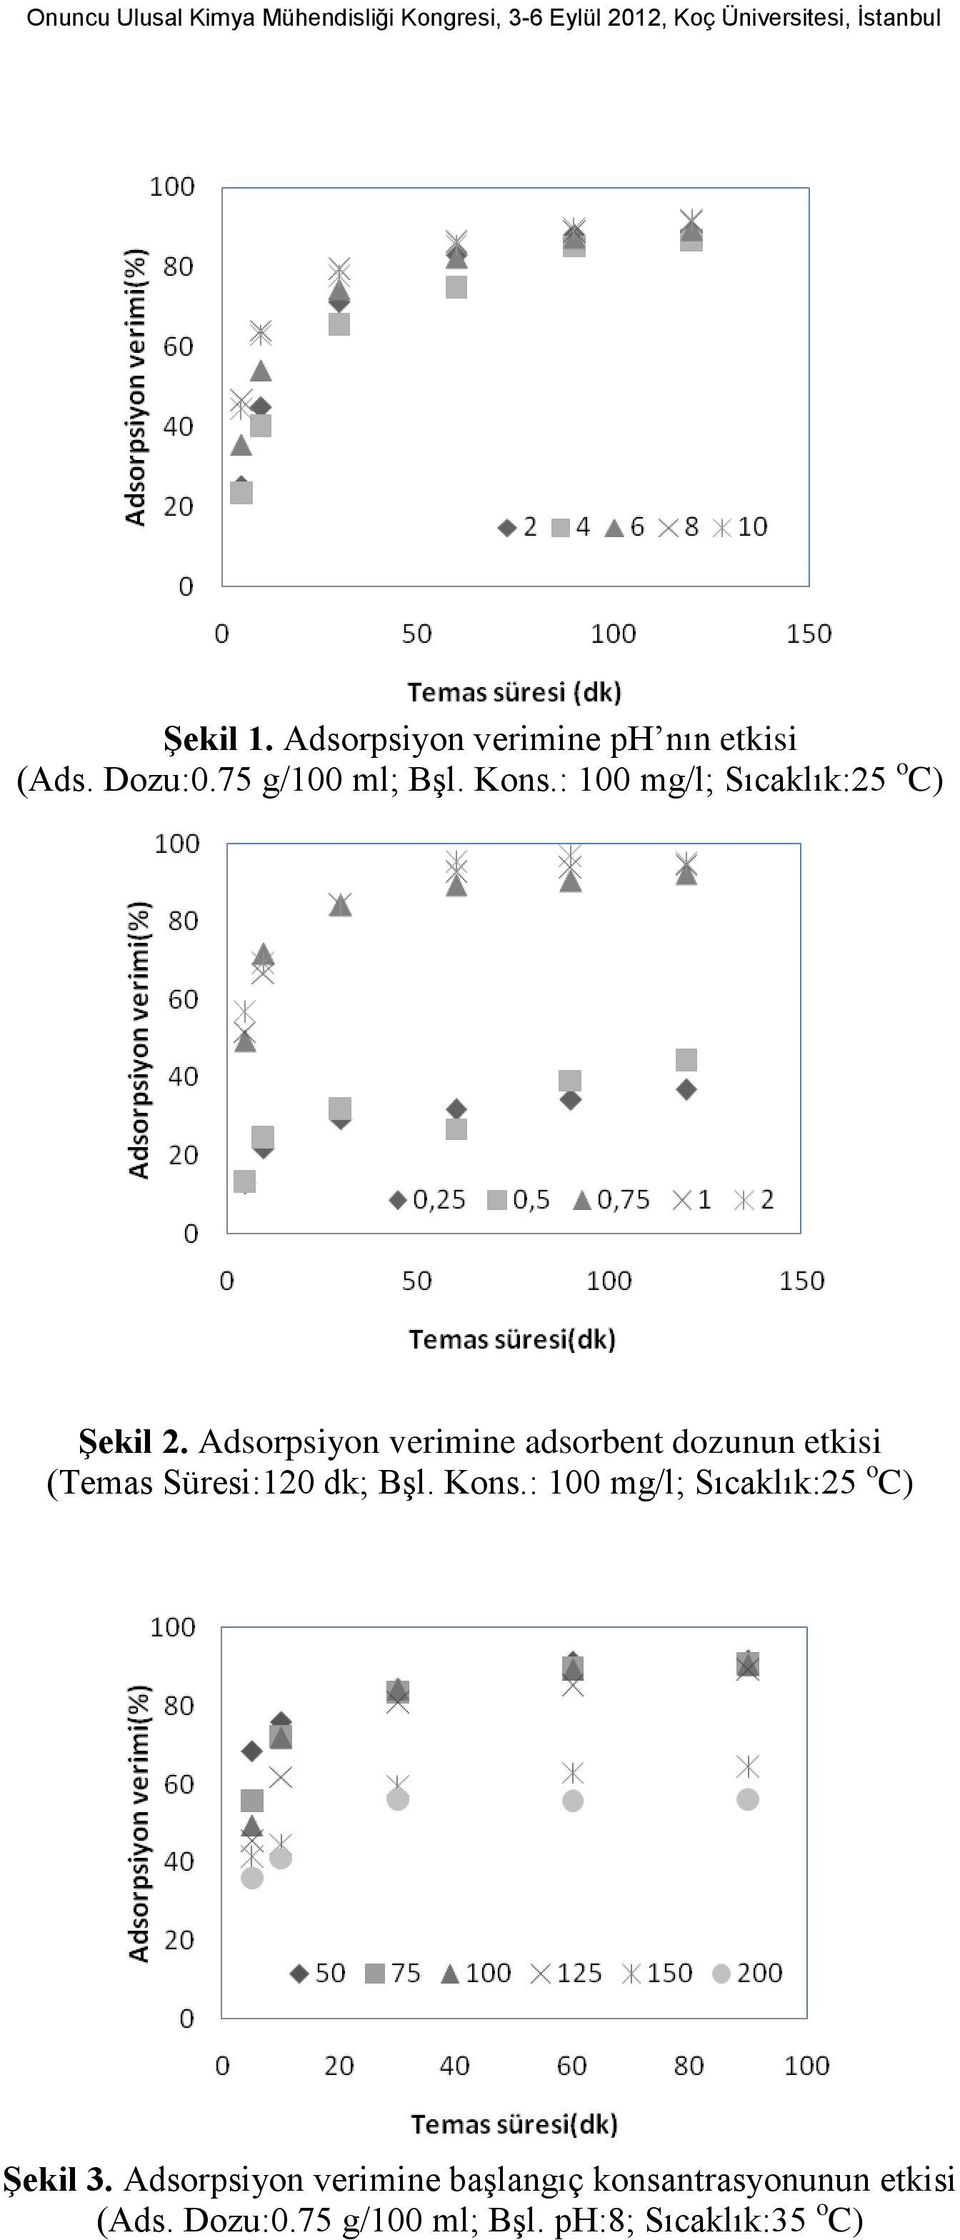 Adsorpsiyon verimine adsorbent dozunun etkisi (Temas Süresi:120 dk; Bşl. Kons.